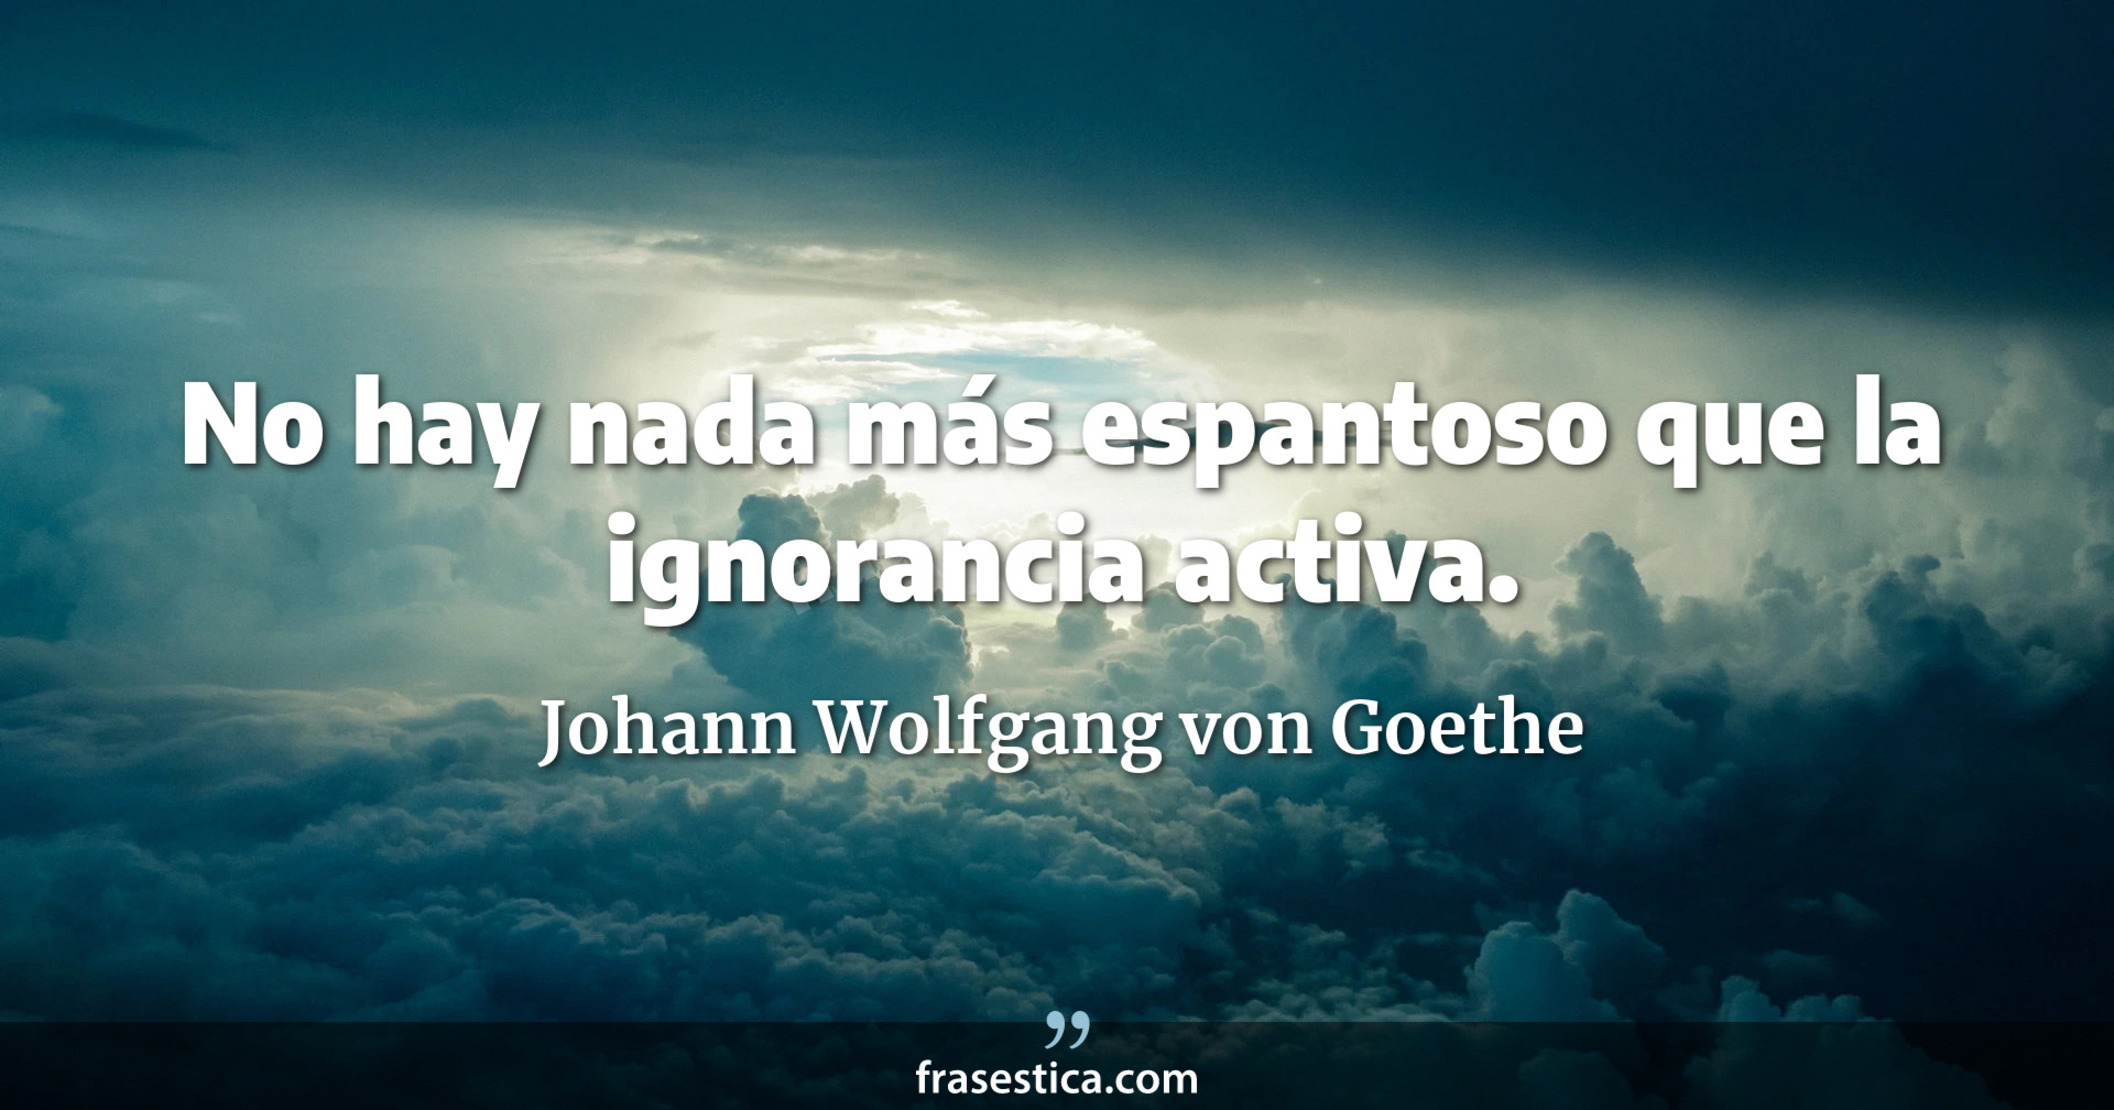 No hay nada más espantoso que la ignorancia activa. - Johann Wolfgang von Goethe